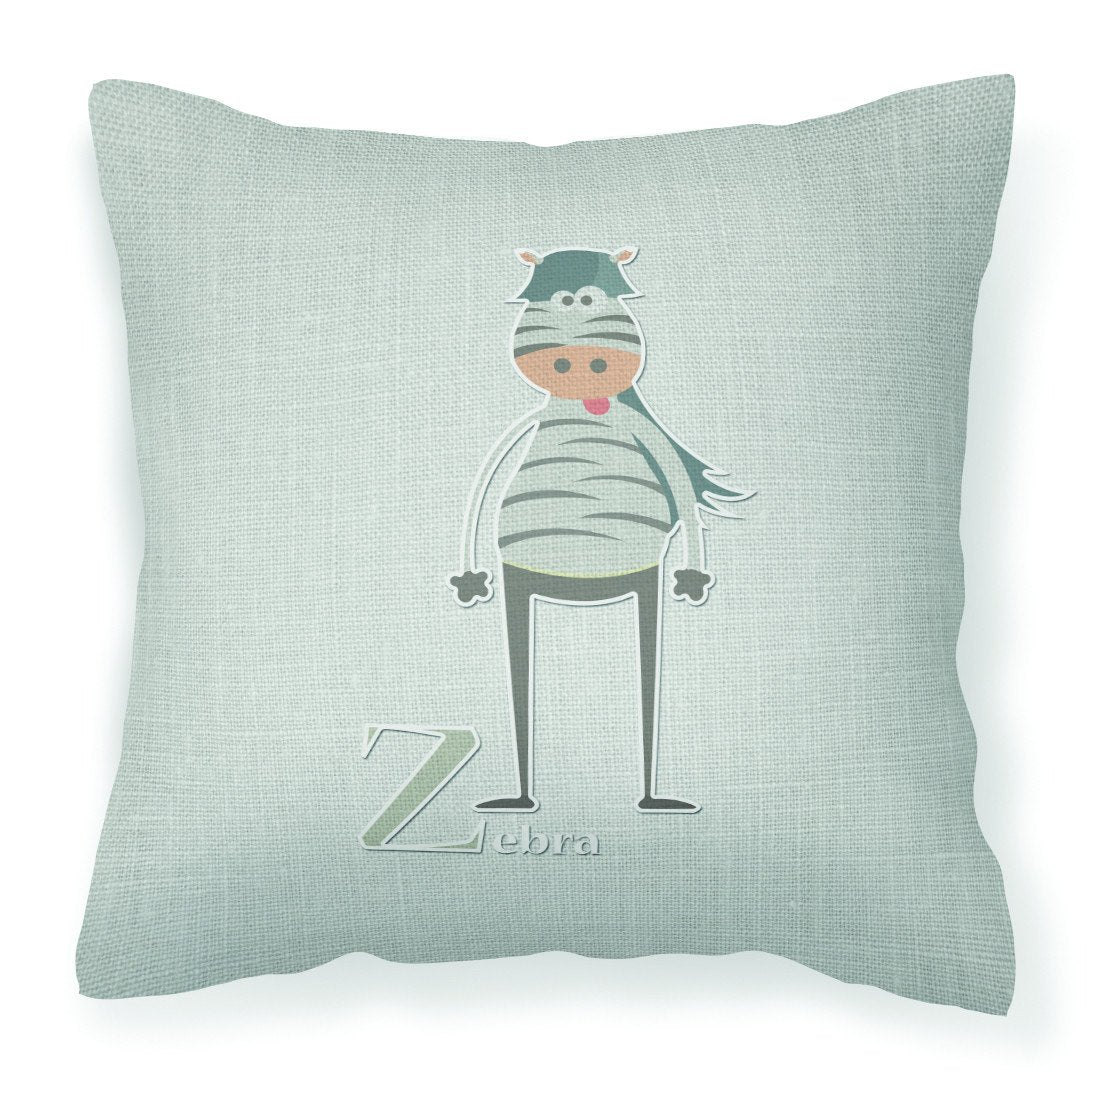 Alphabet Z for Zebra Fabric Decorative Pillow BB5751PW1818 by Caroline's Treasures